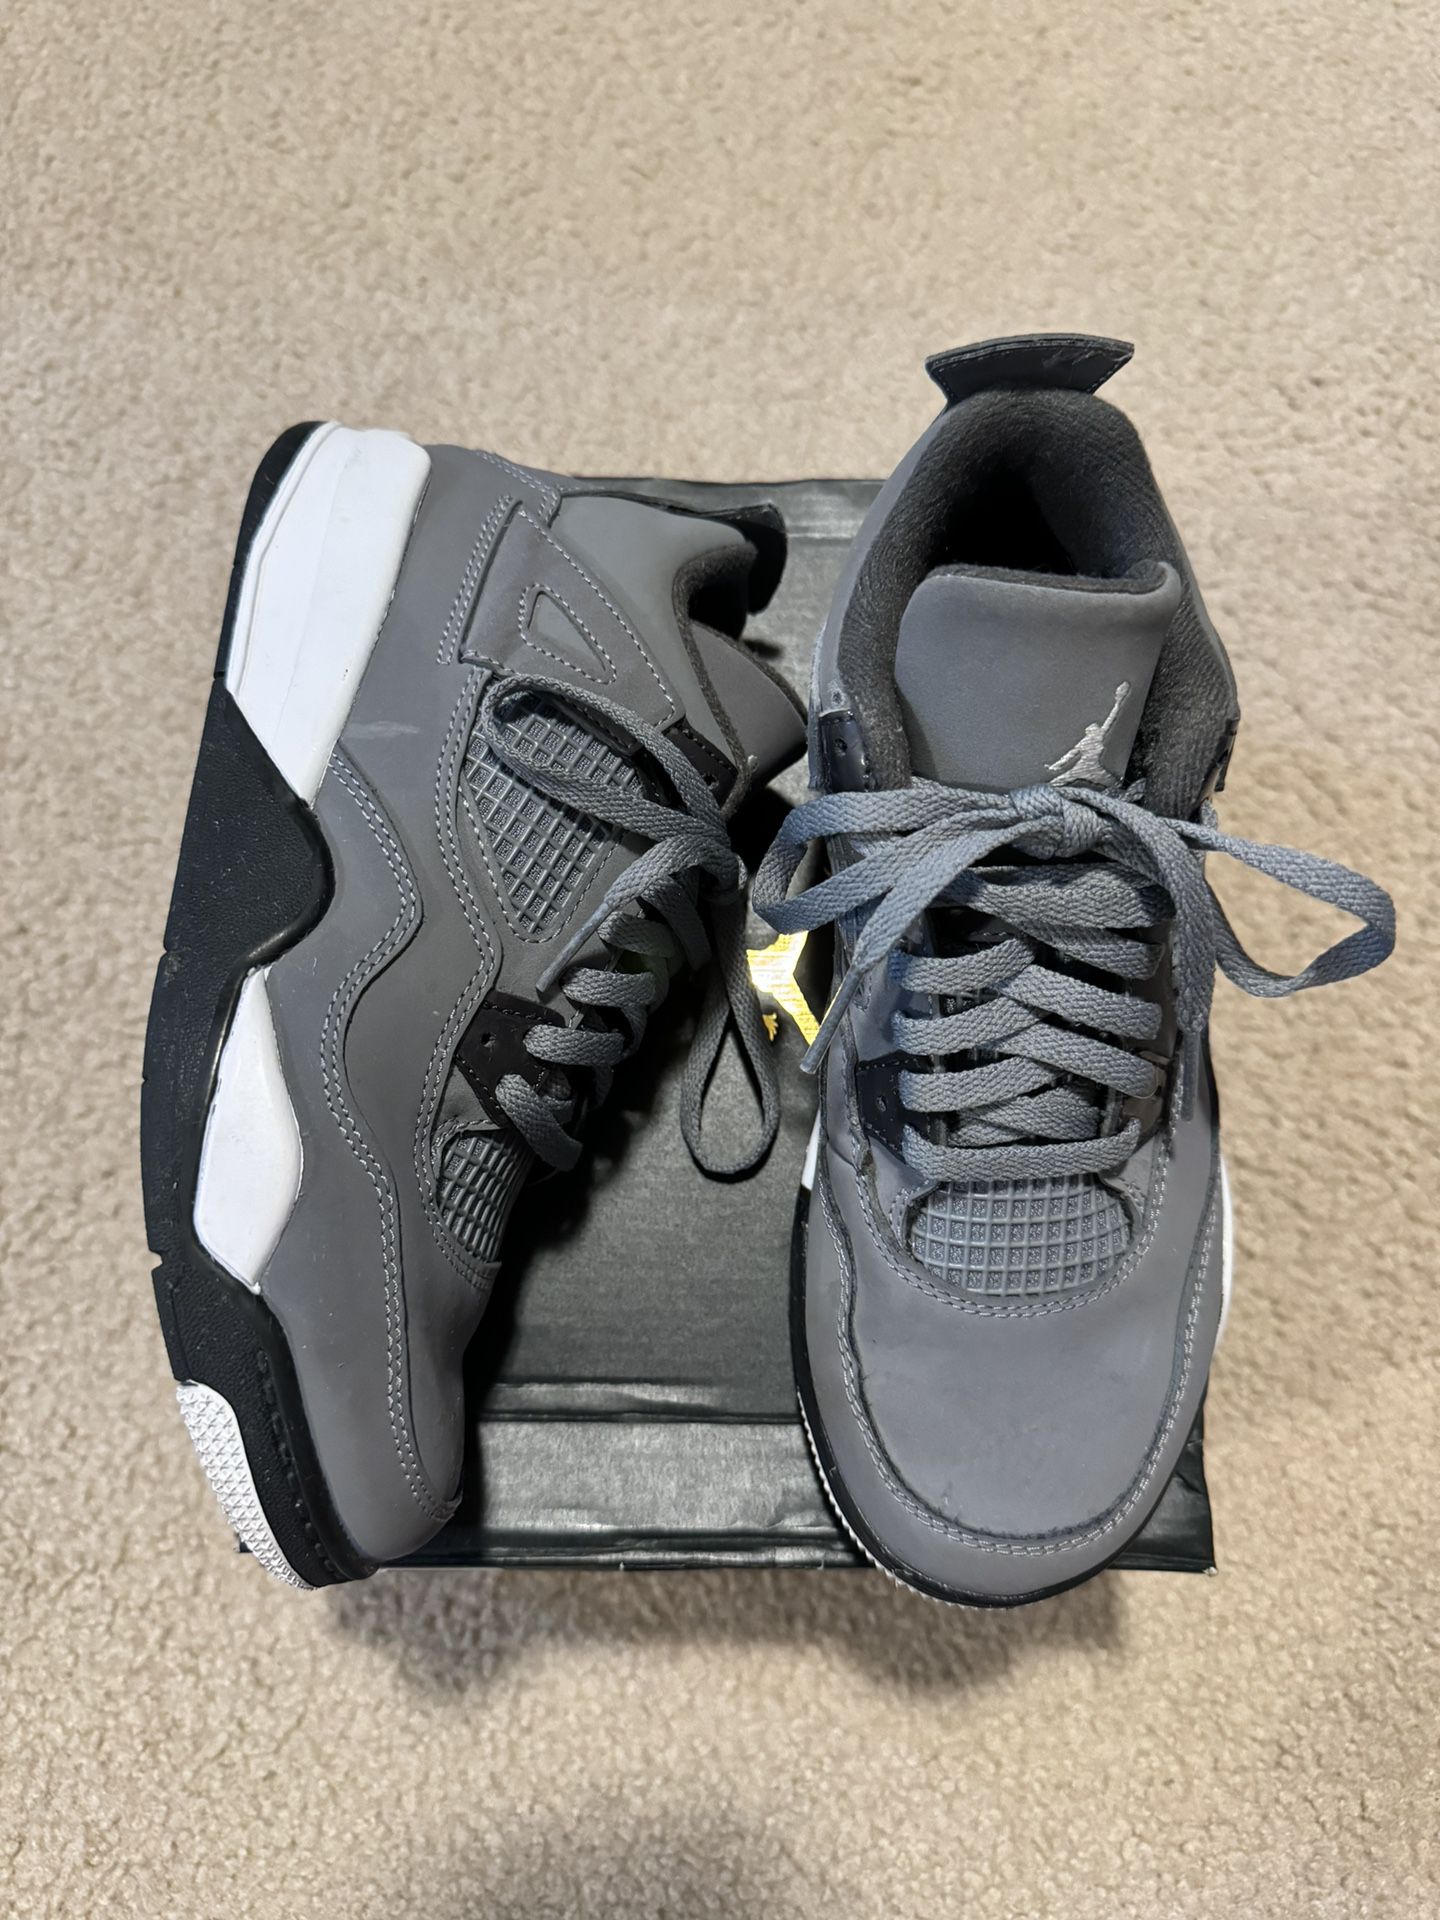 Air Jordan 4 Retro 'Cool Grey' (2019) (PS) Size 2Y